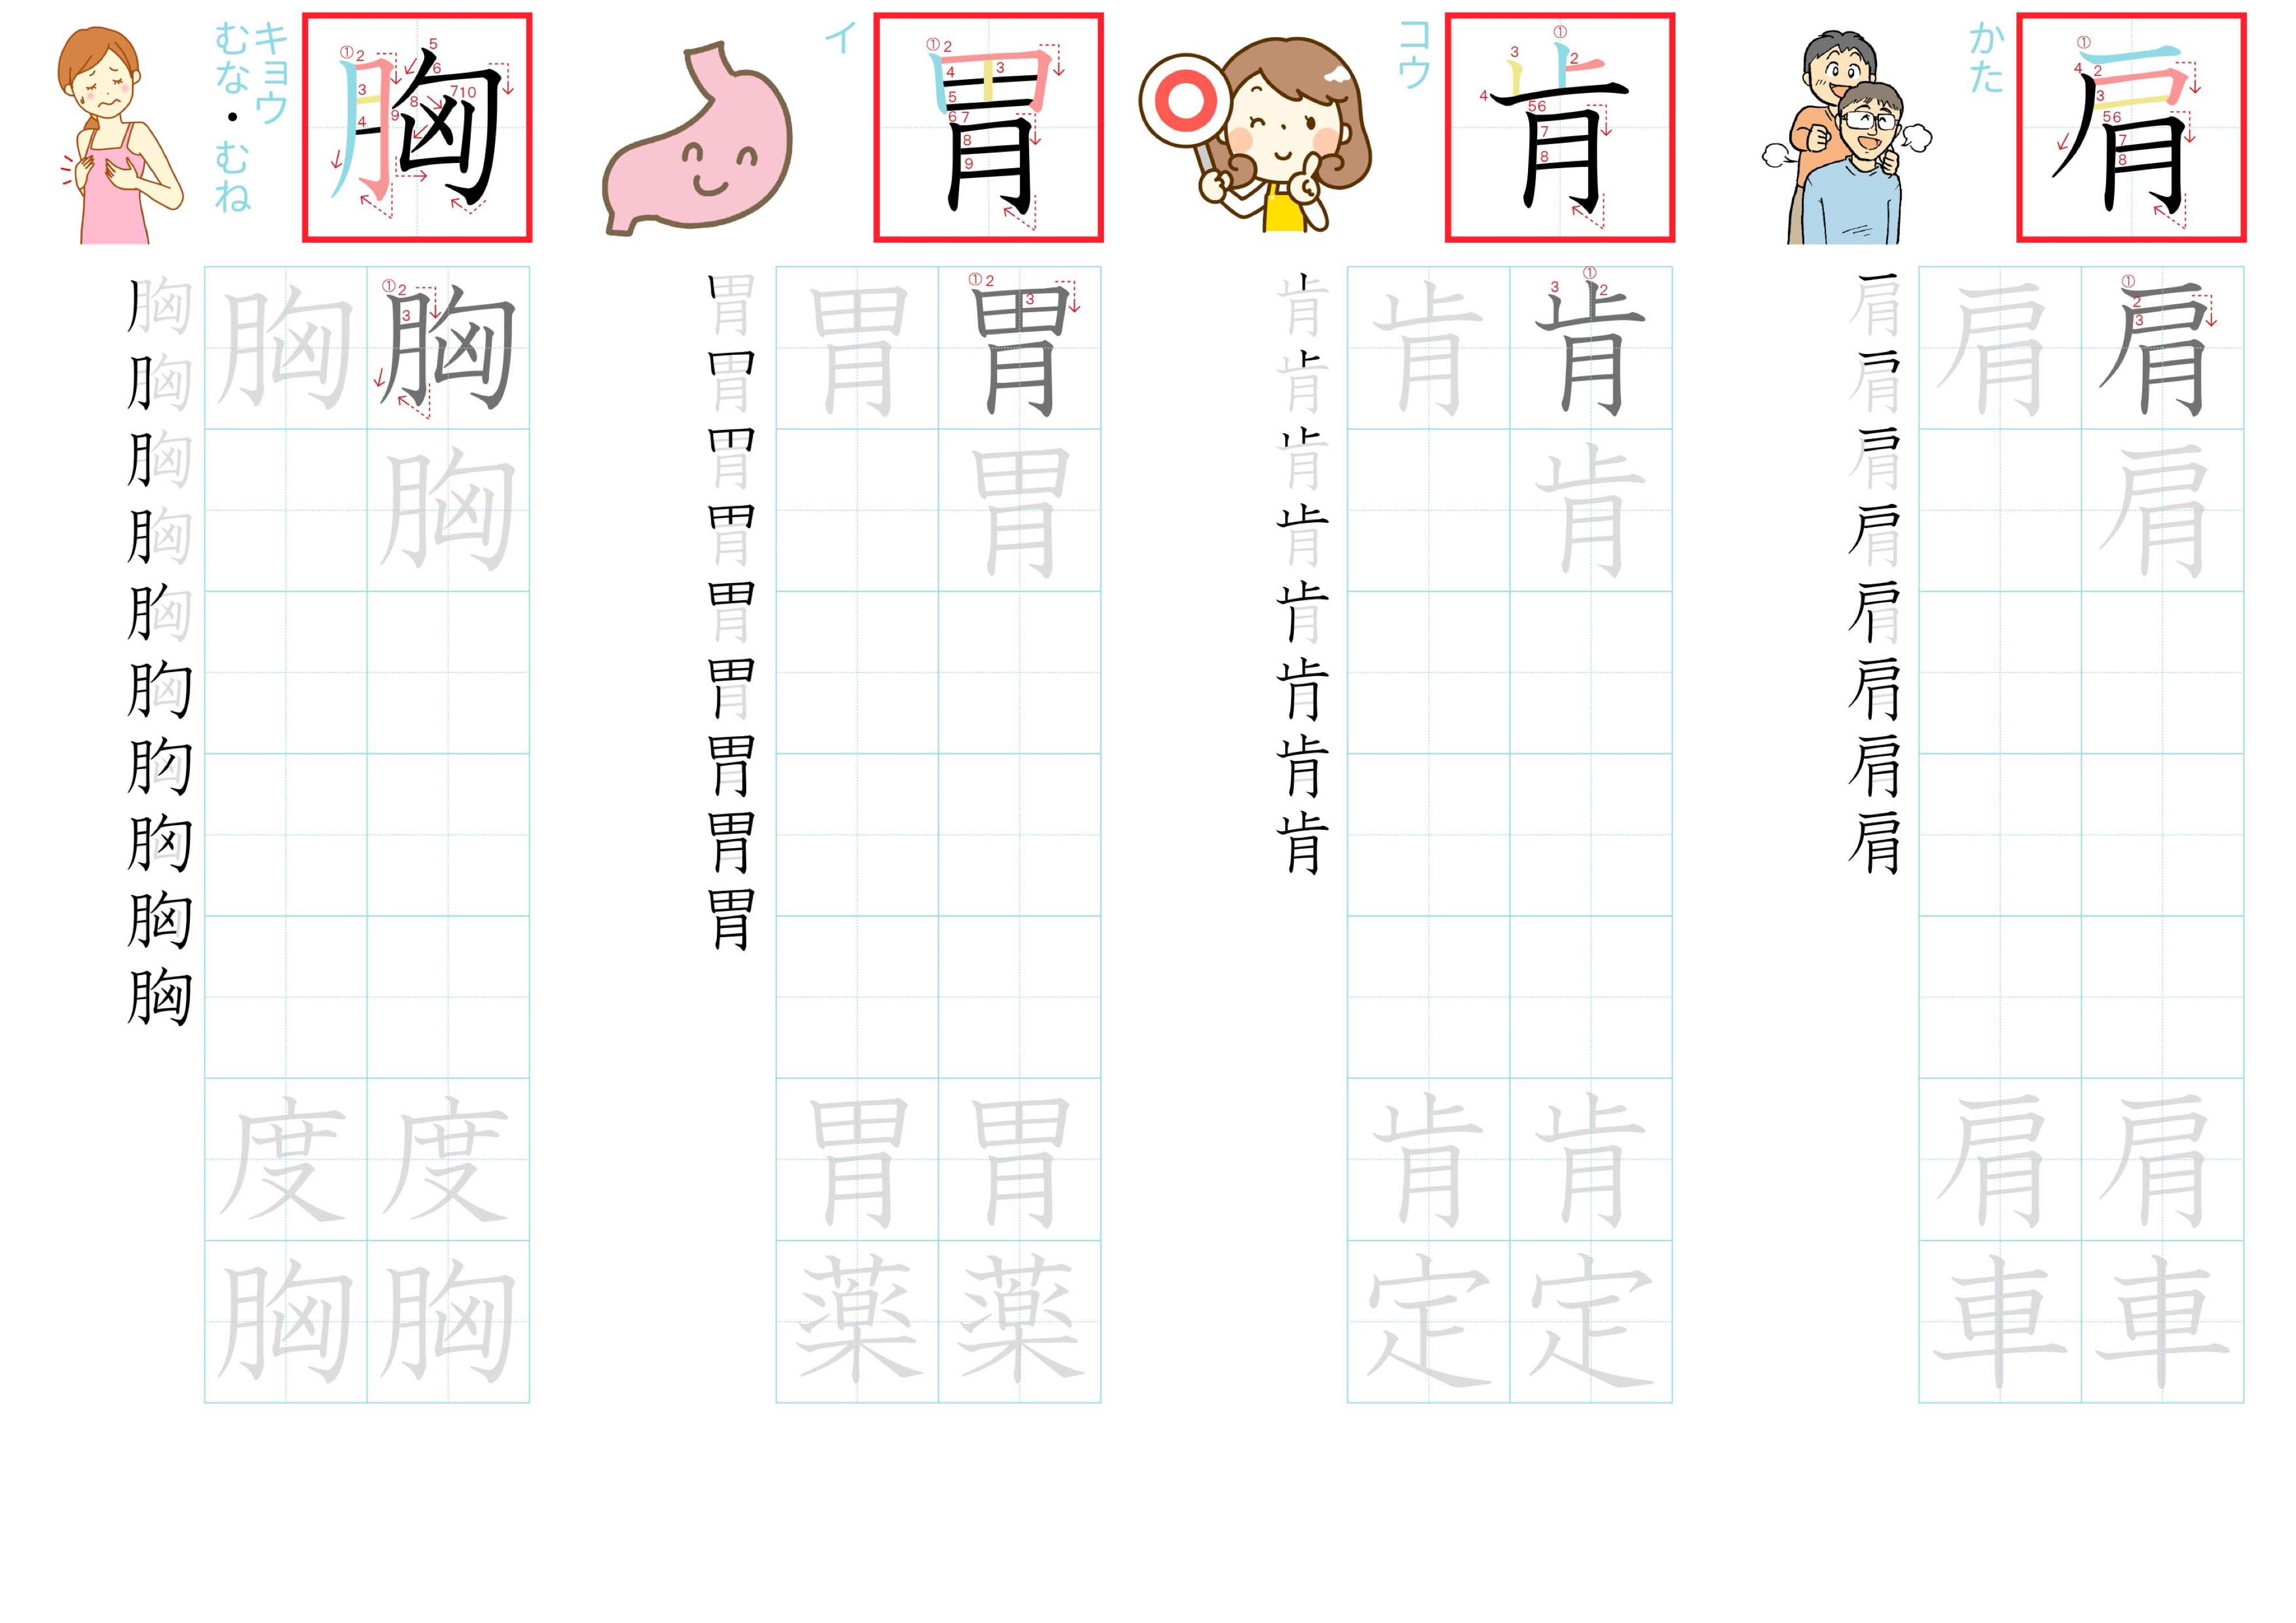 kanji-practice-card-n2-japanese-223